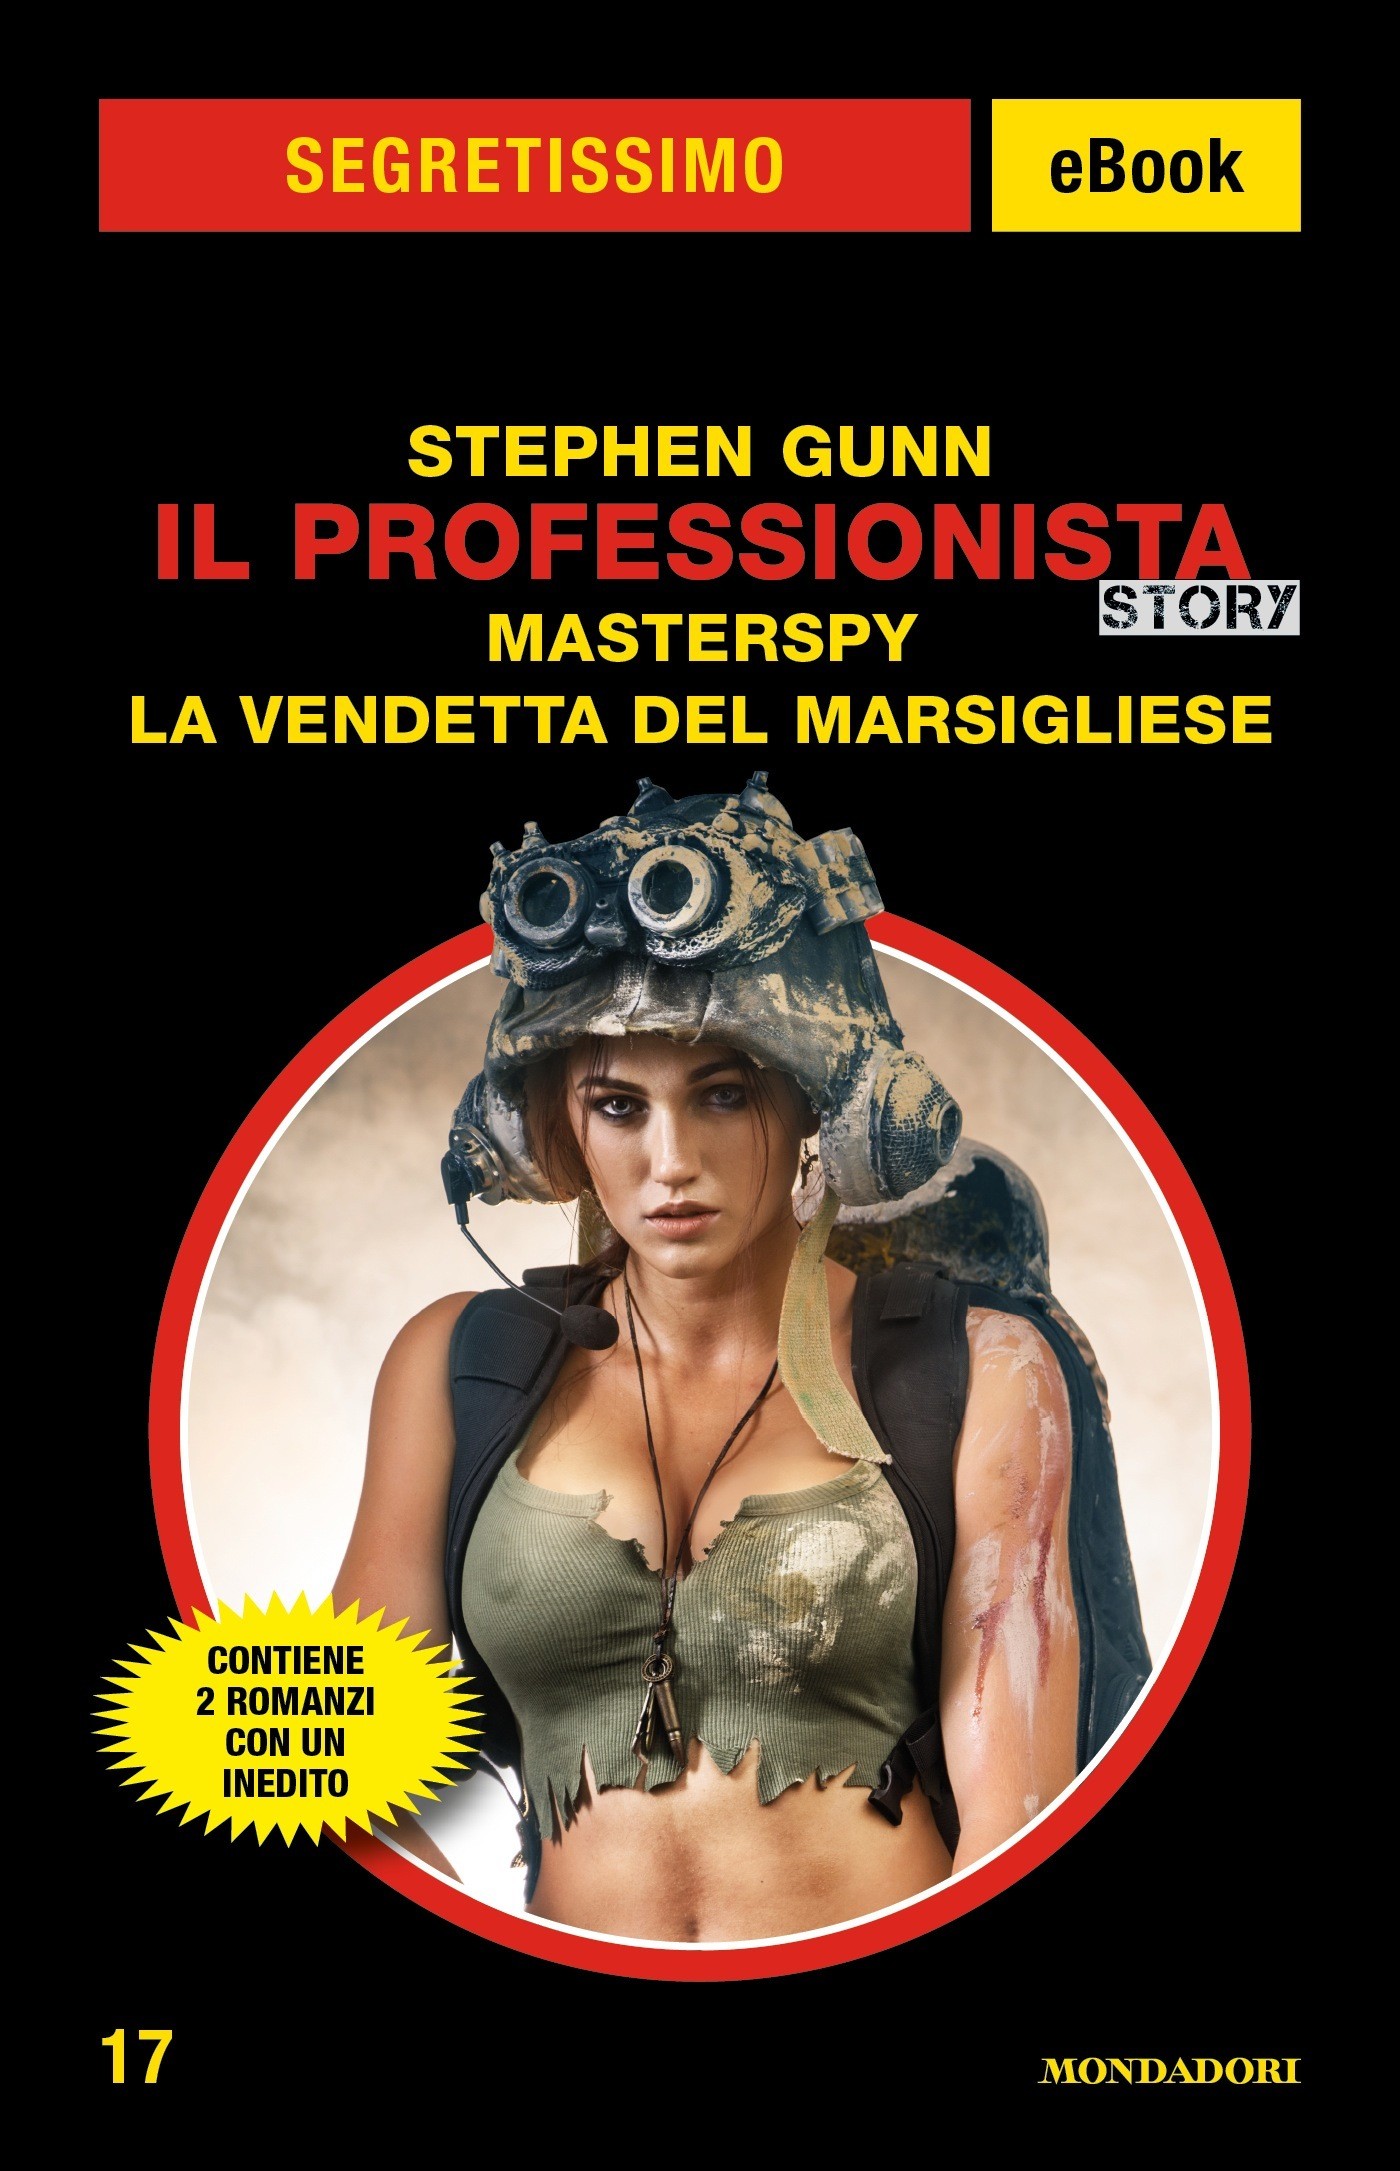 Il Professionista Story: Masterspy - La vendetta del Marsigliese (Segretissimo) - Librerie.coop